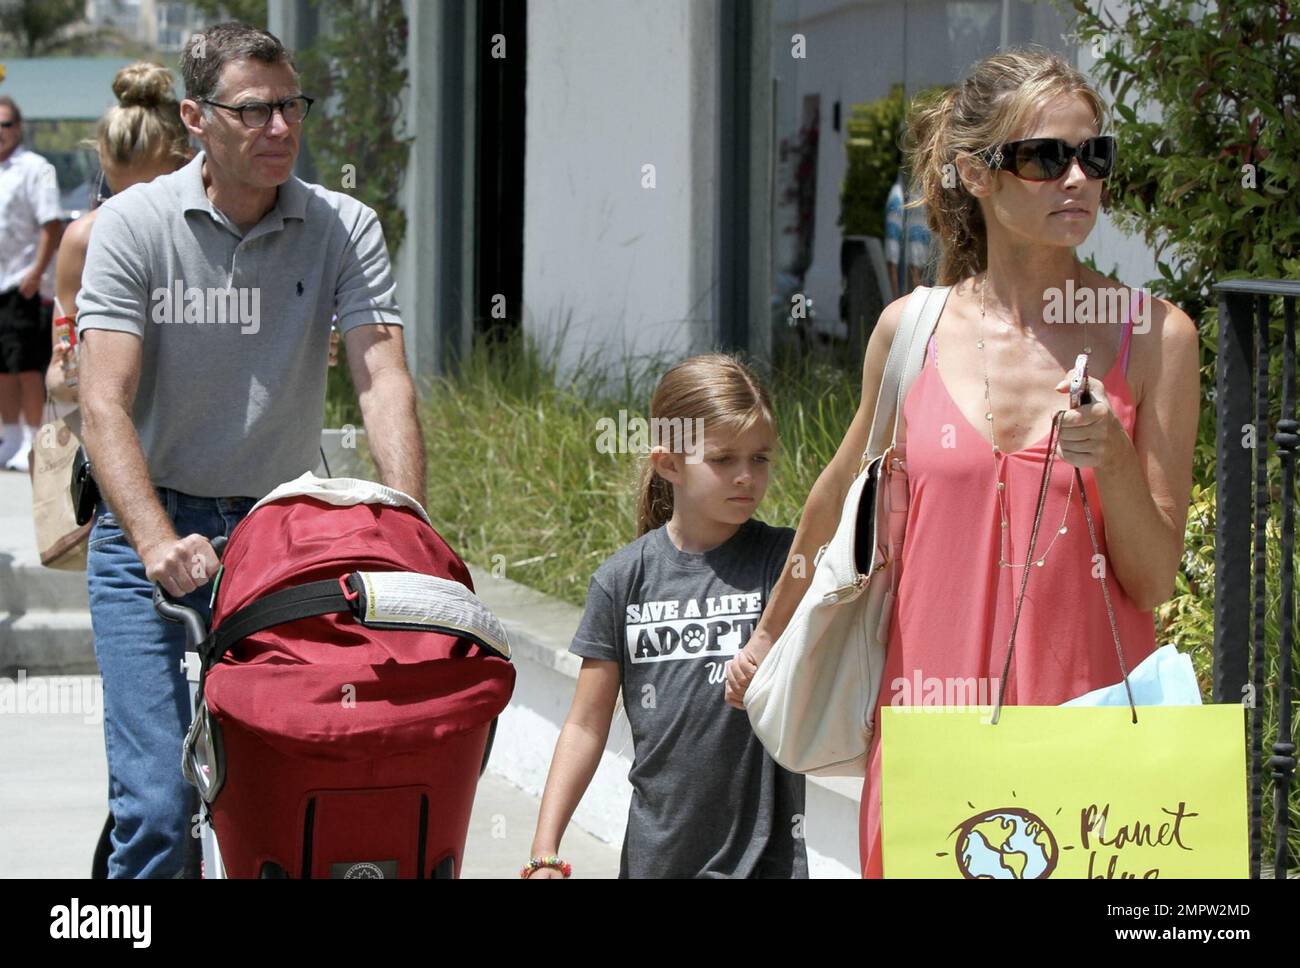 L'actrice Denise Richards a été repérée à Malibu avec ses trois adorables  filles et son père. Denise, âgée de 41 ans, portait une sundress de couleur  pêche avec des lunettes de soleil